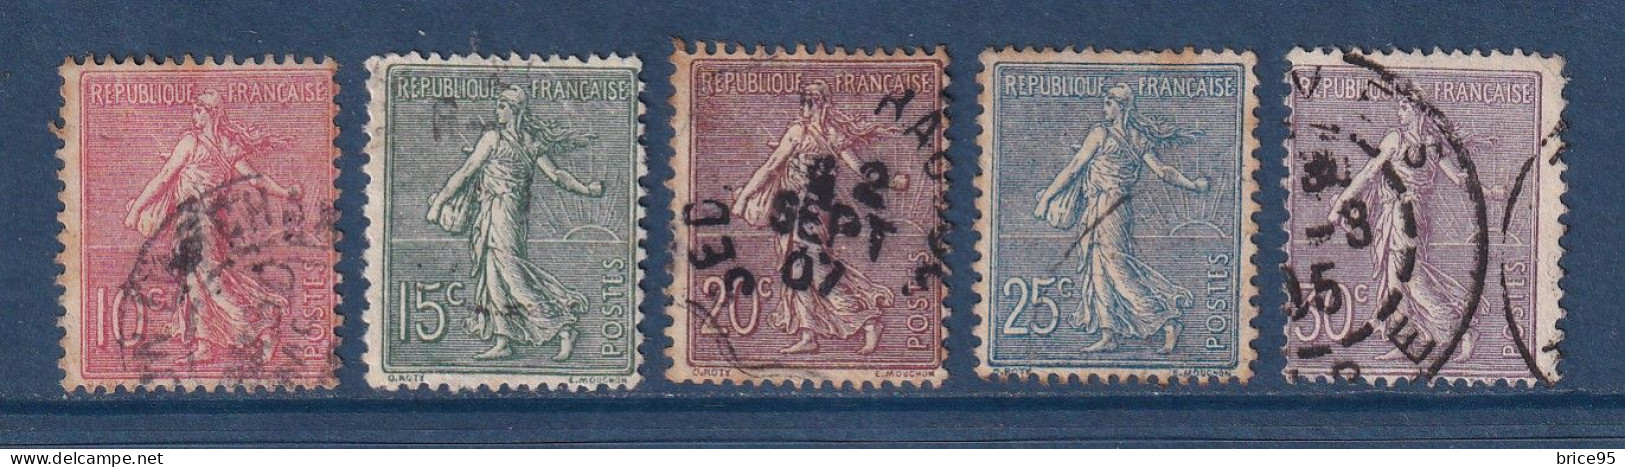 France - YT N° 129 à 133 - Oblitéré - 1903 - Usados